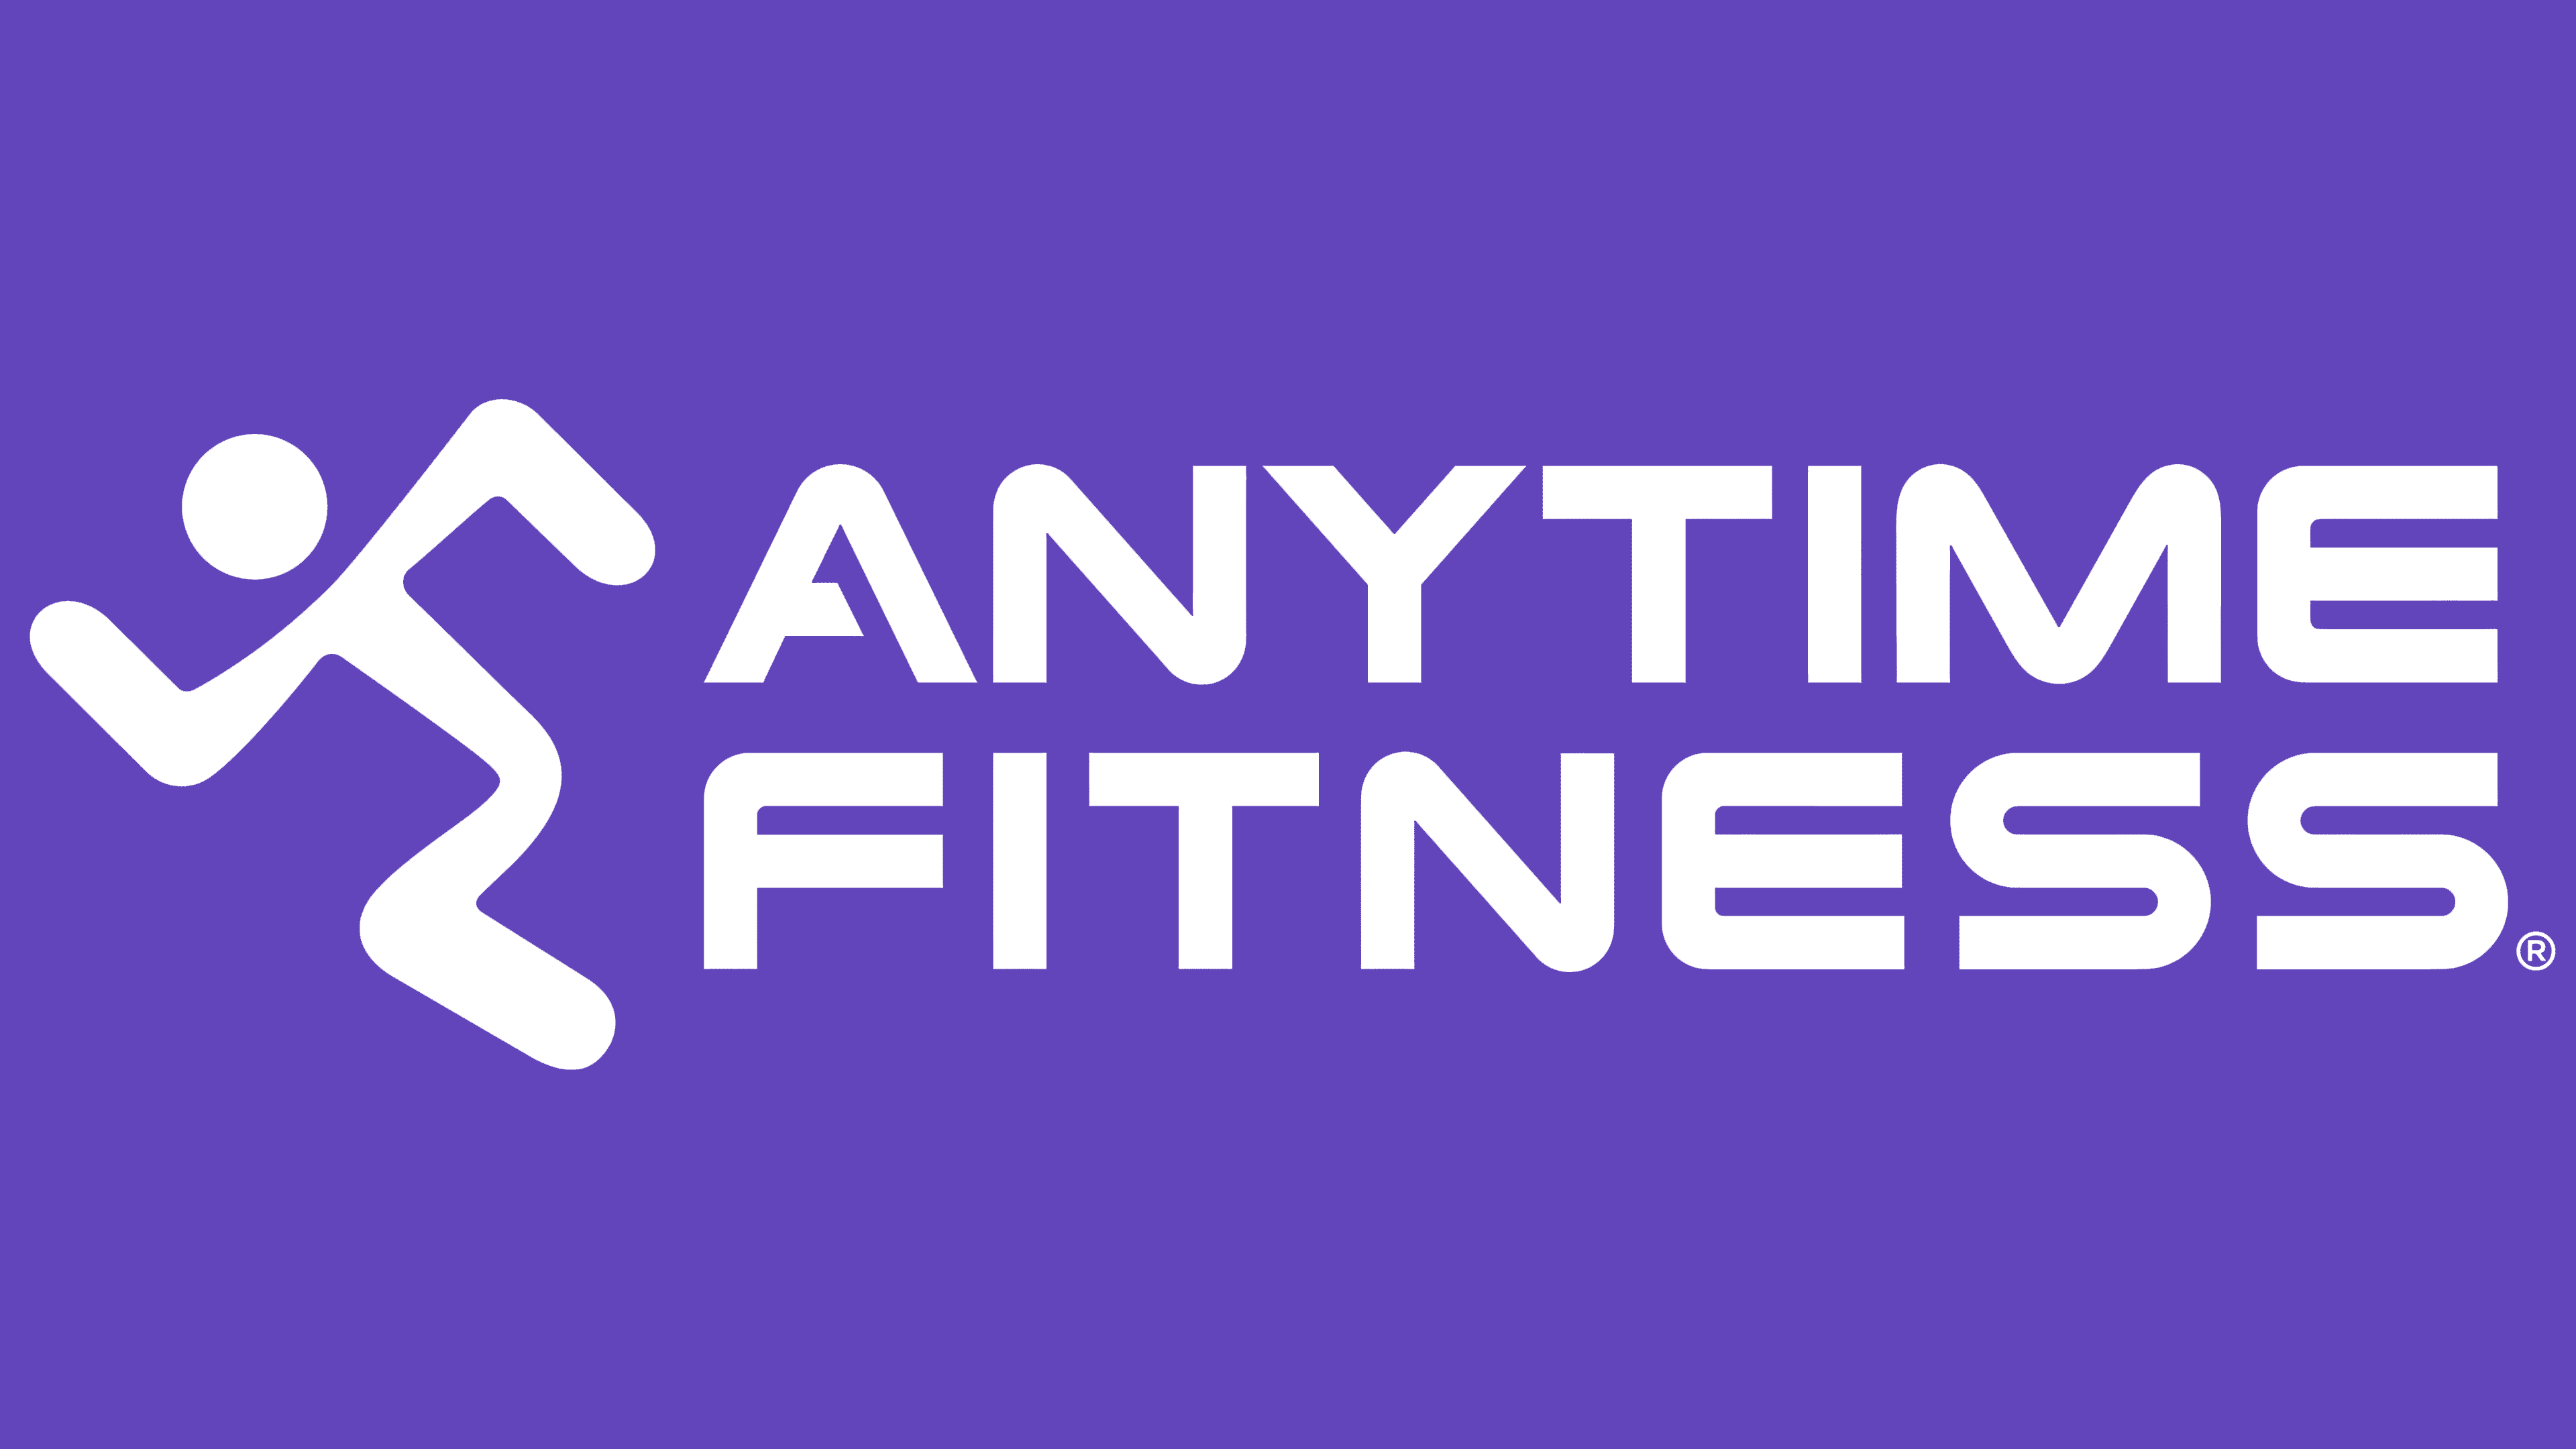 anytime fitness new logo